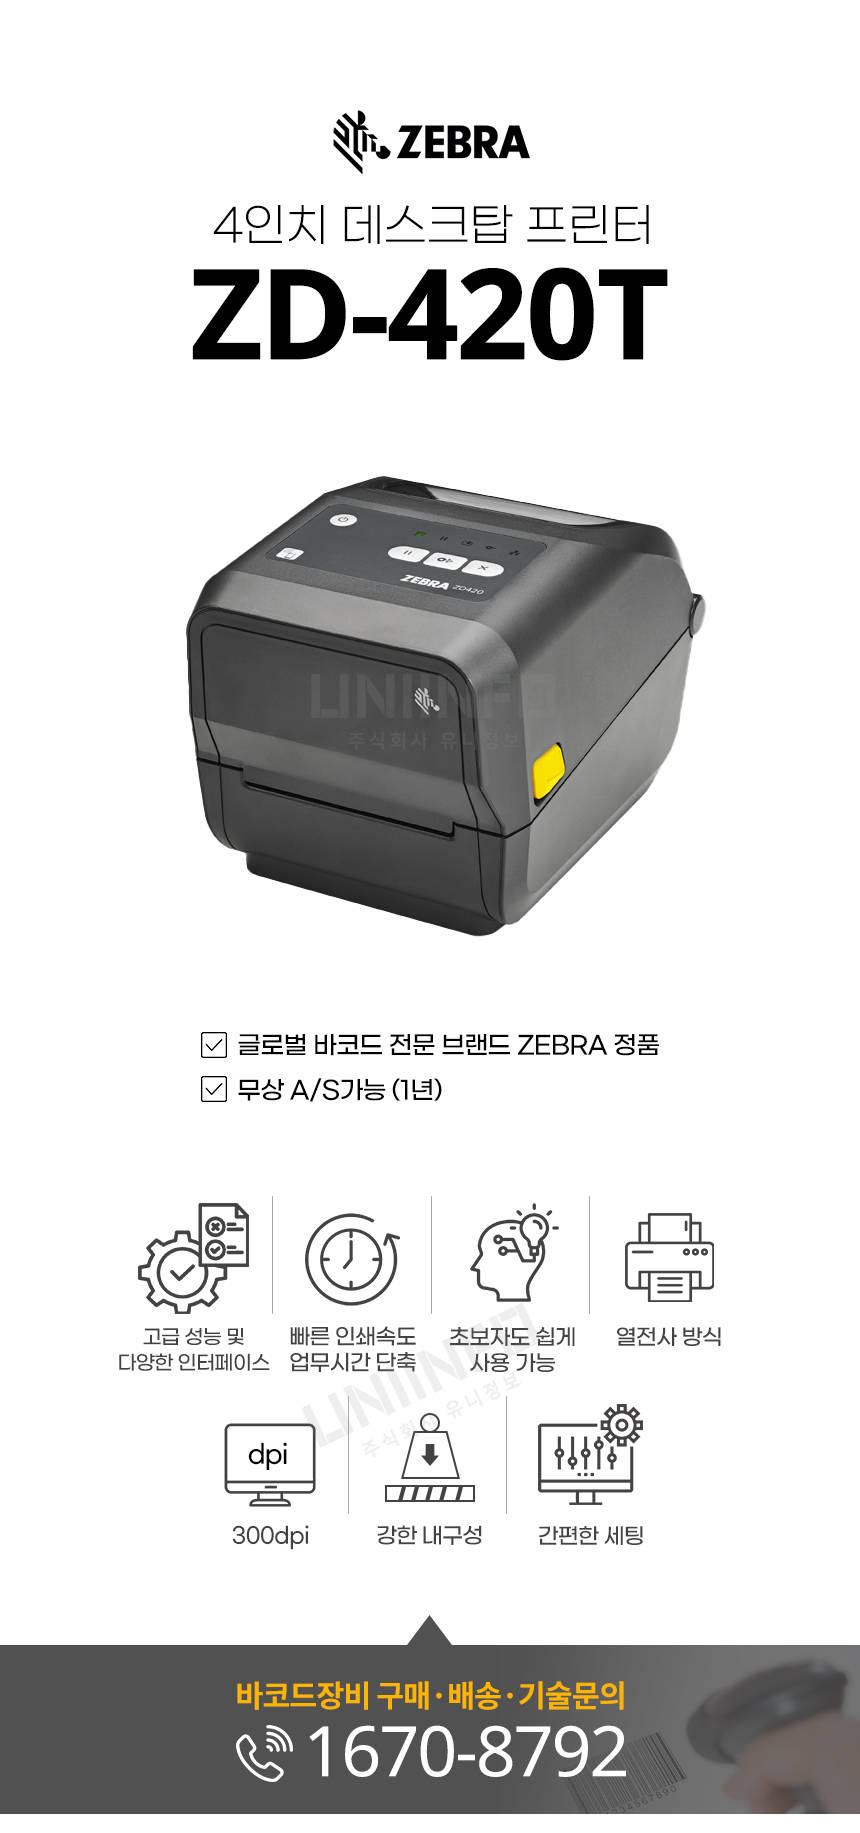  zebra 4인치 데스크탑 프린터 zd-420t 고성능 인터페이스 열전사 방식 내구성